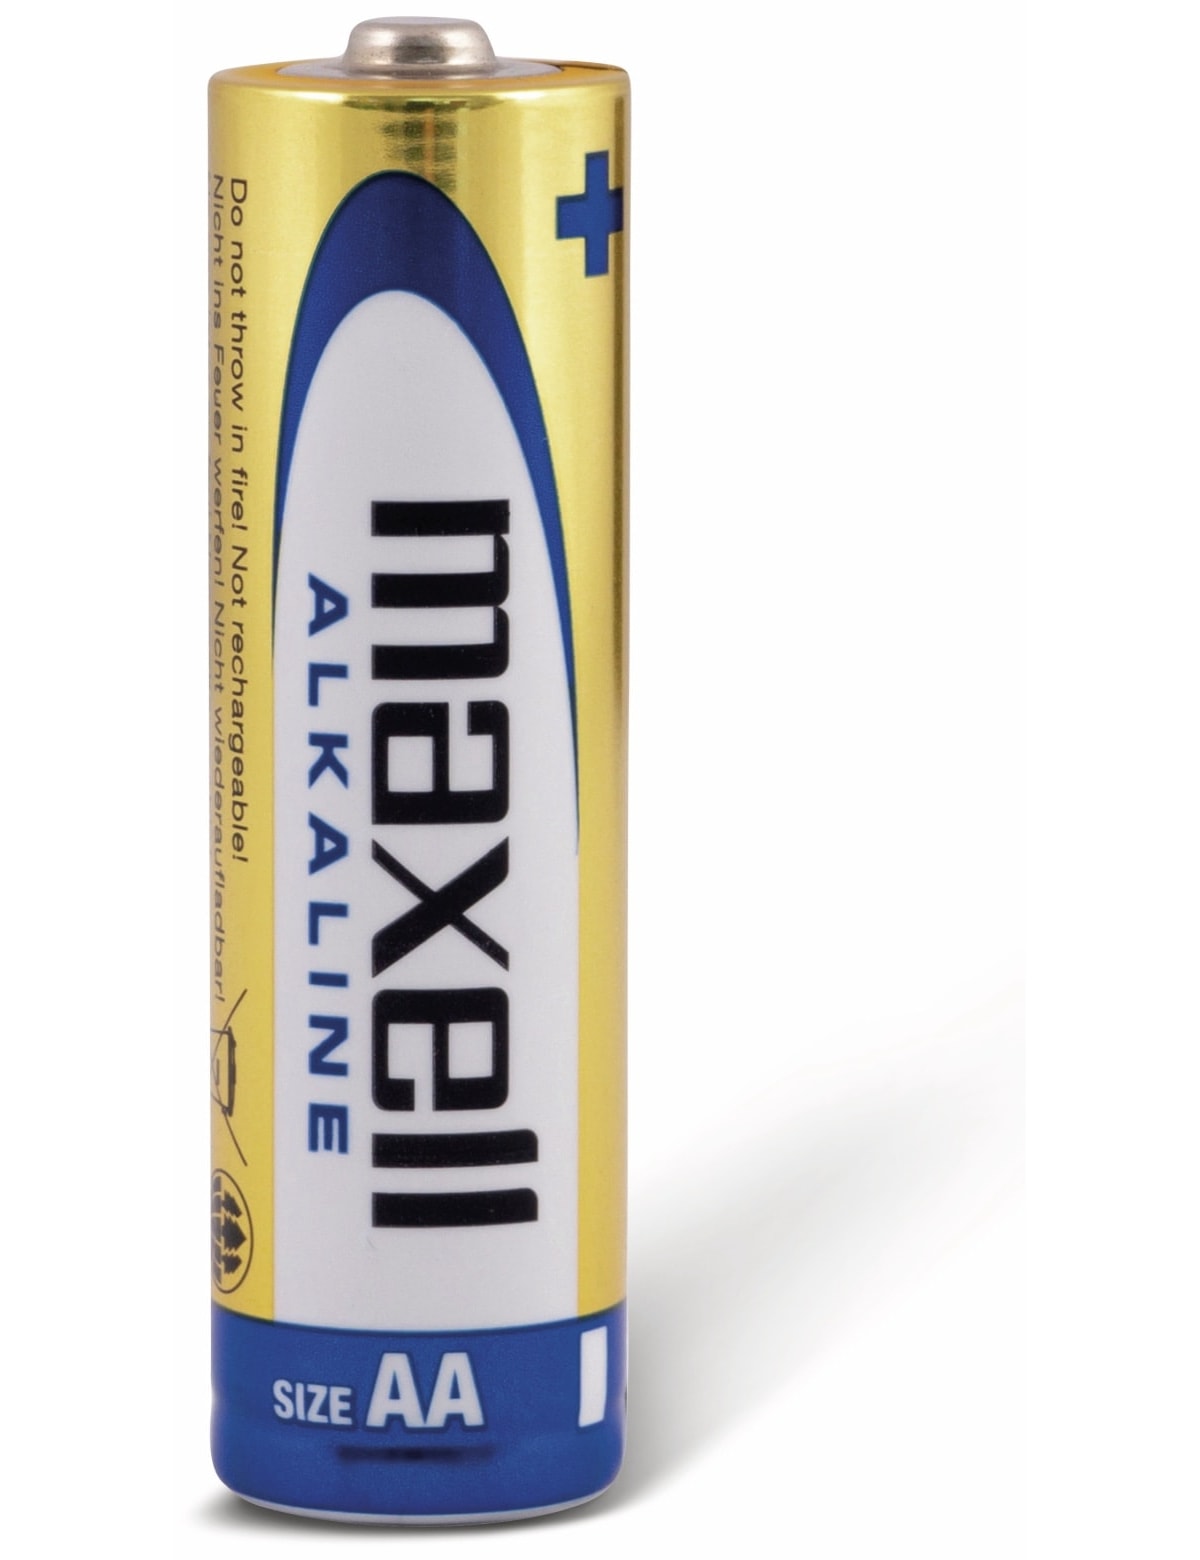 MAXELL Mignon-Batterie Alkaline, AA, LR6, 4 Stück